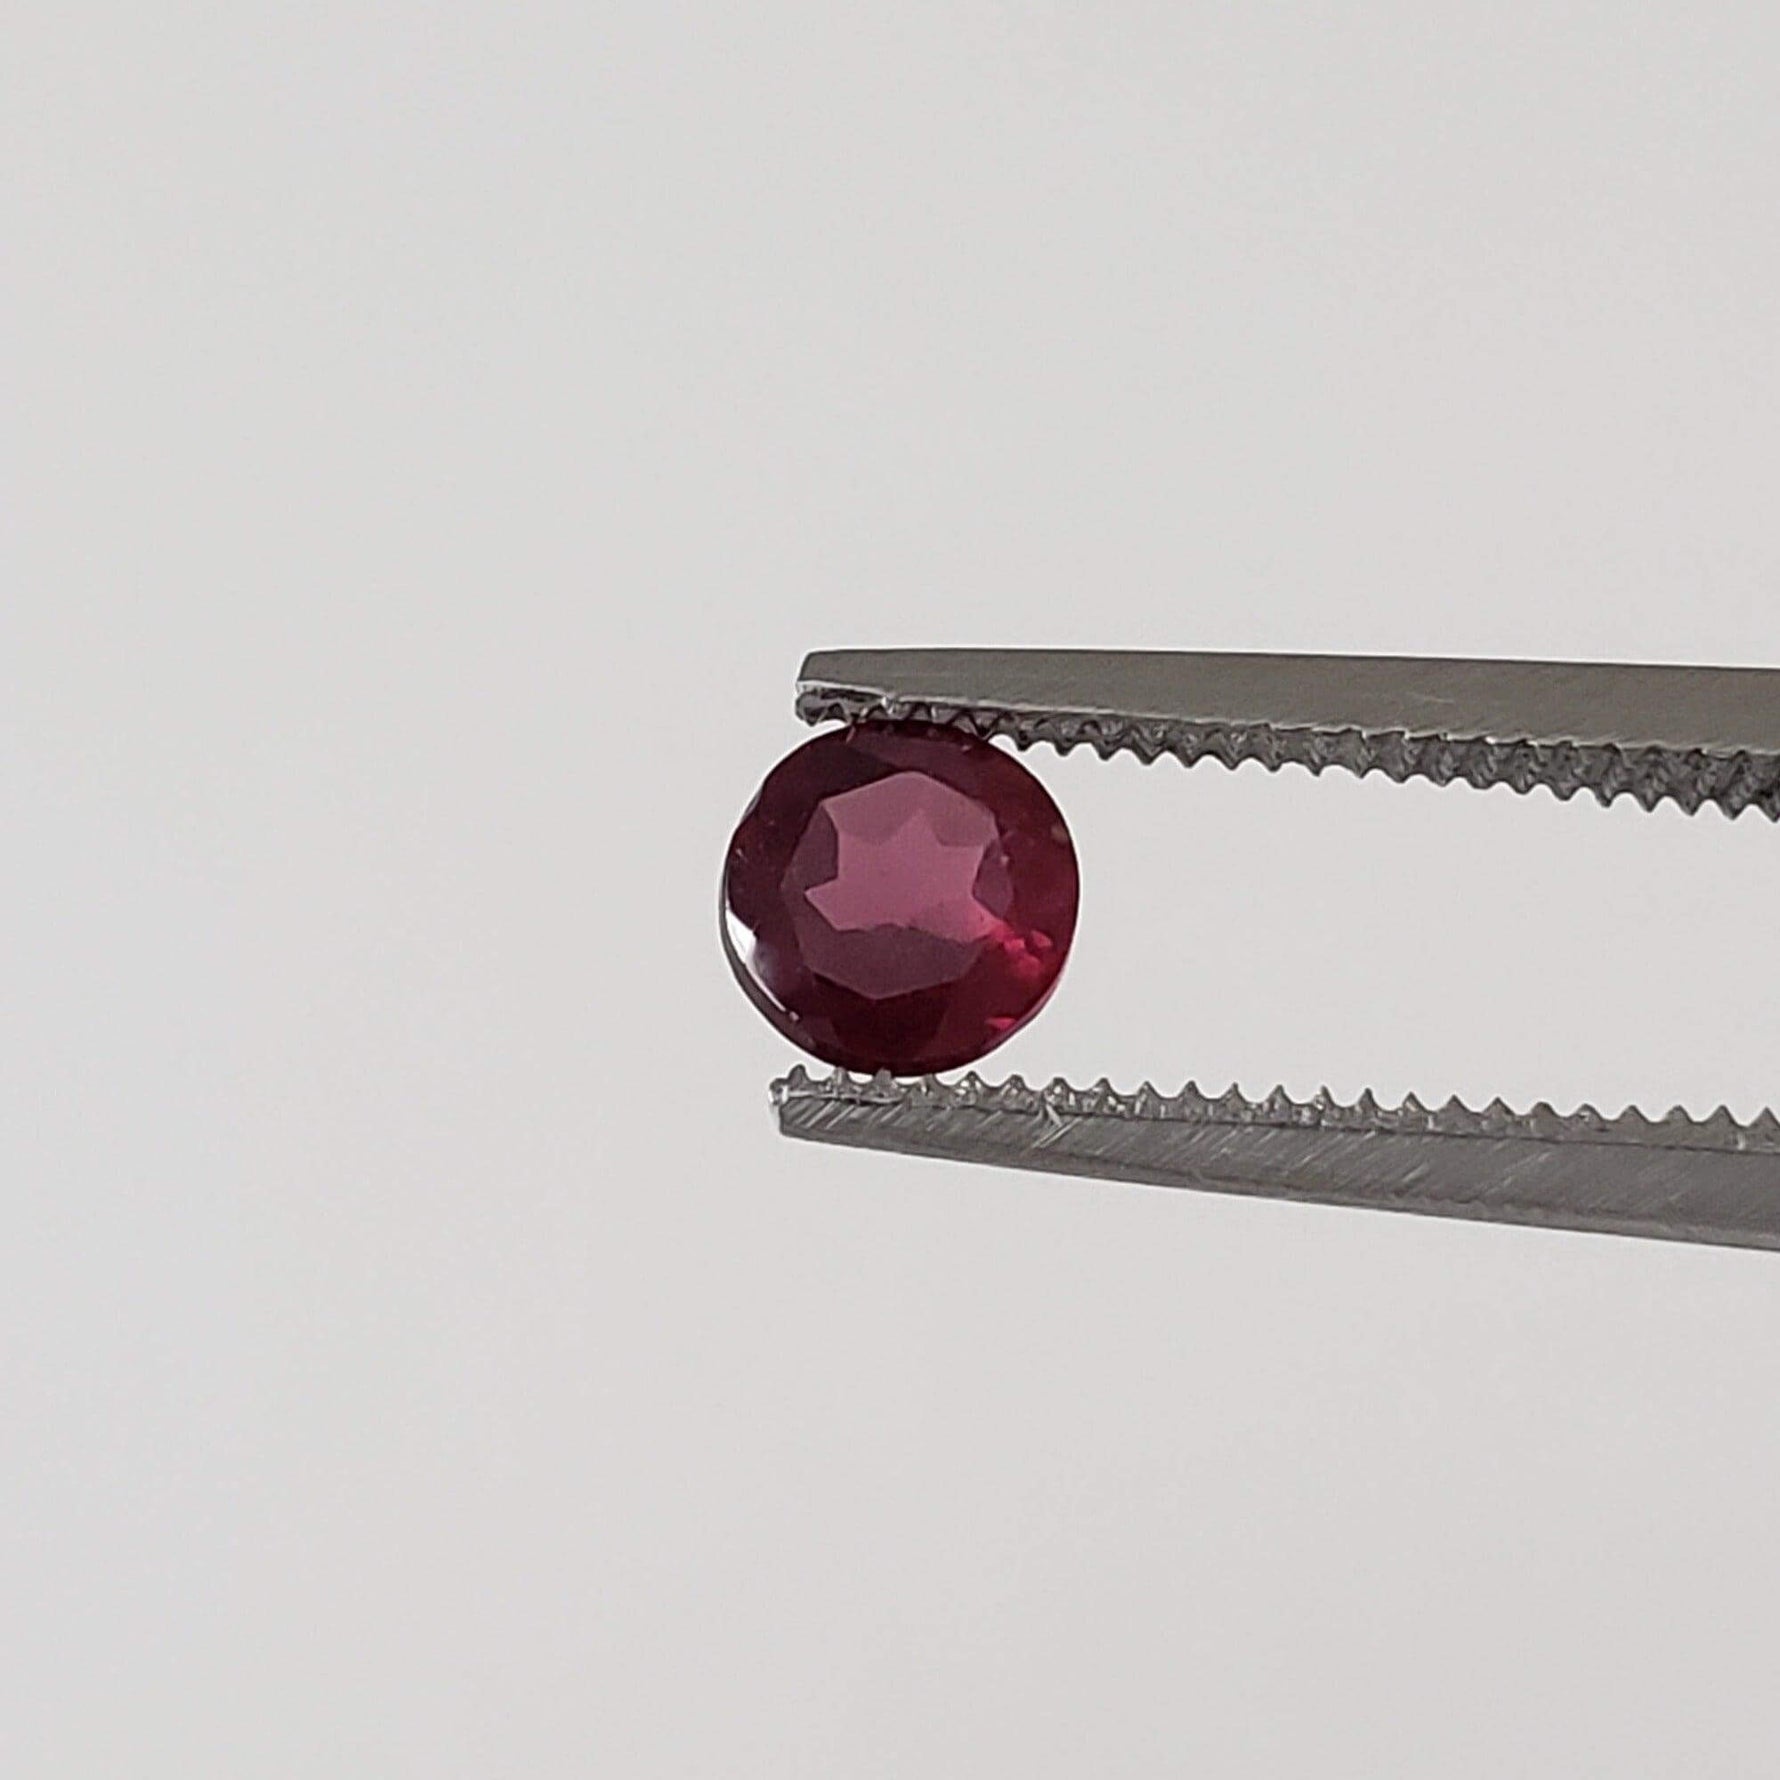 Rhodolite Garnet | Untreated Garnet | Round Cut | Reddish Purple | 4.5mm .44ct